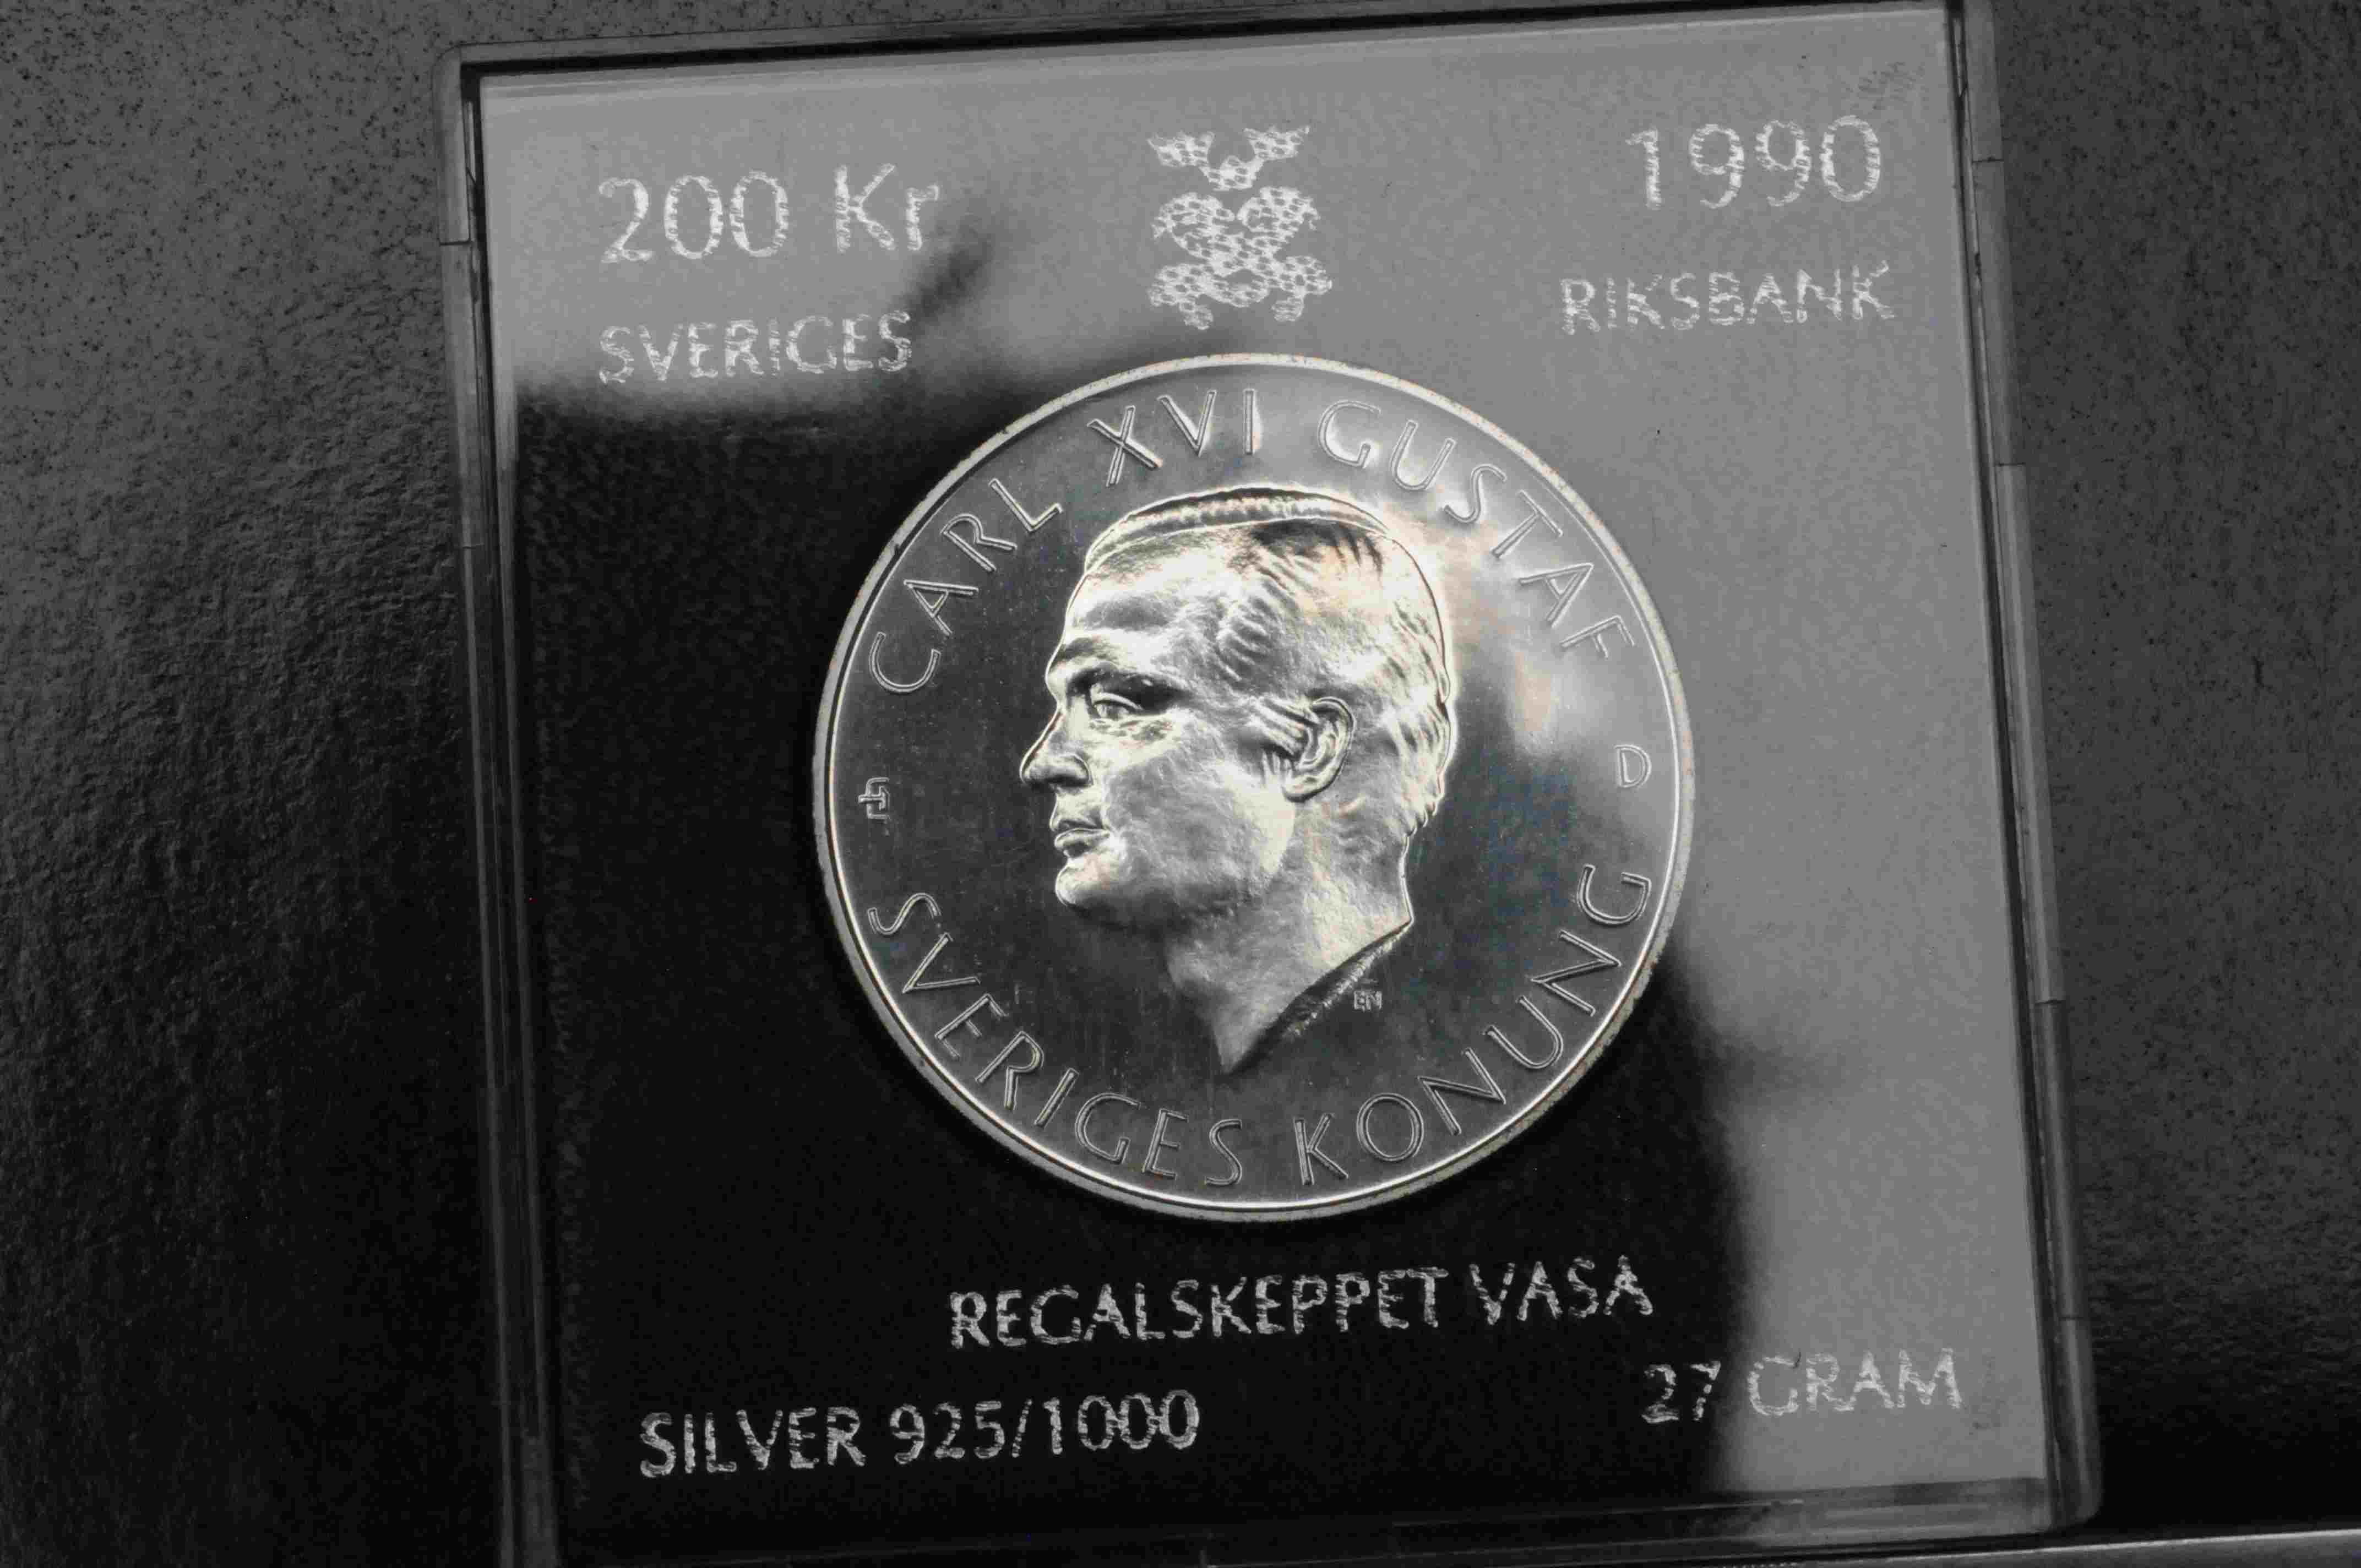 200 kr 1990 Regalskeppet Vasa sølv 925/1000 27g proof